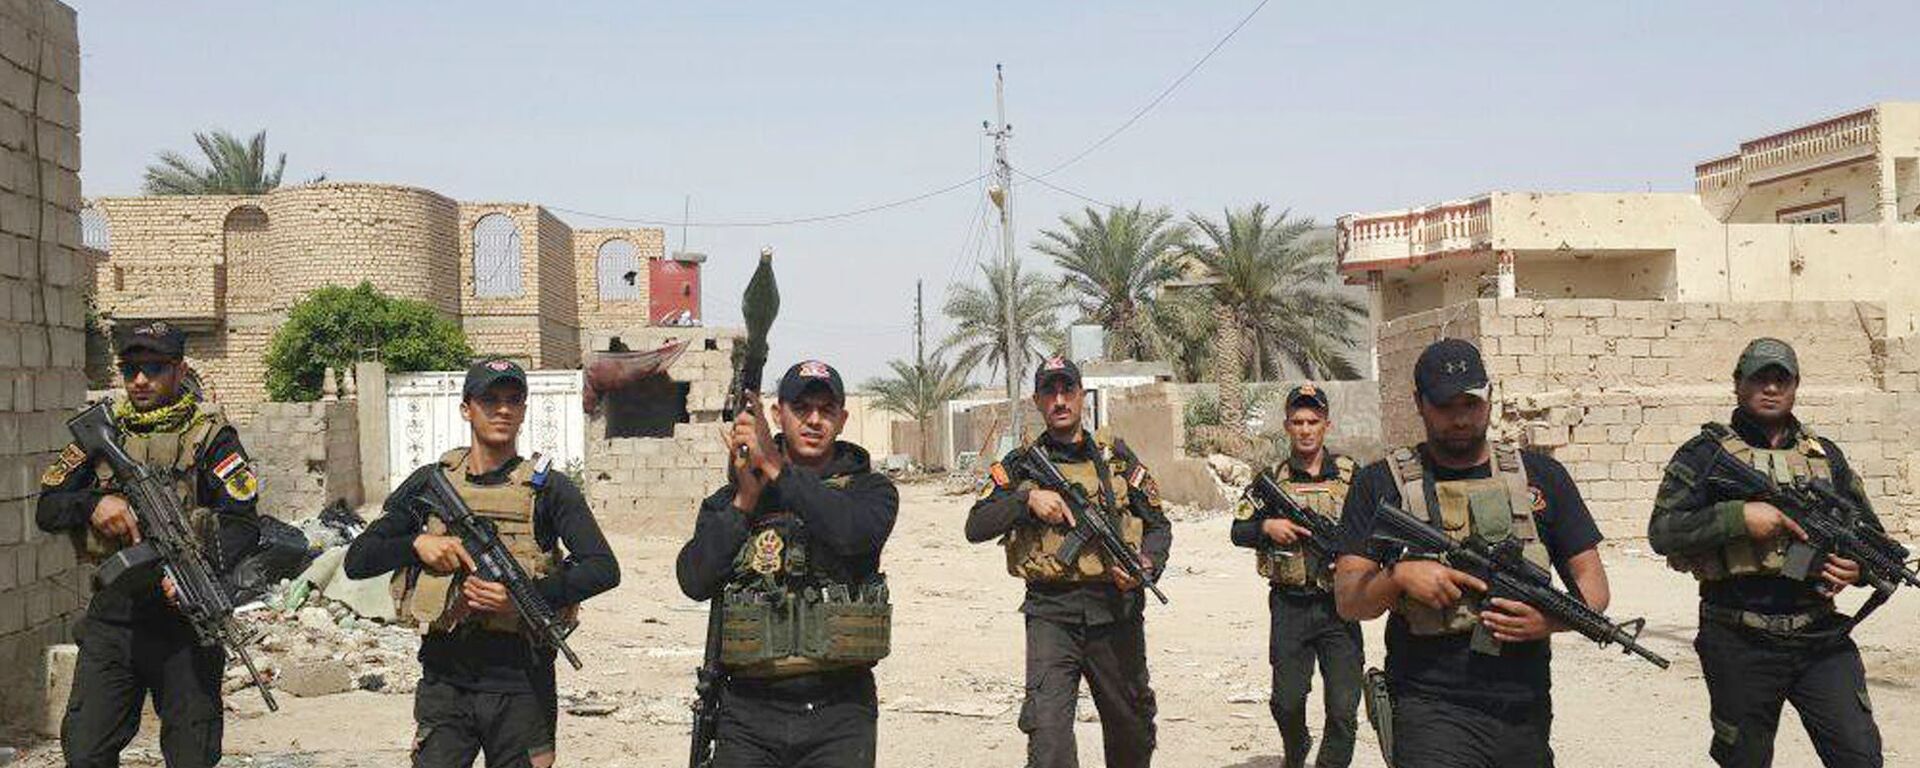 Los soldados iraquíes en la ciudad de Amiriyat Faluya, 8 de mayo 2015 - Sputnik Mundo, 1920, 12.05.2022